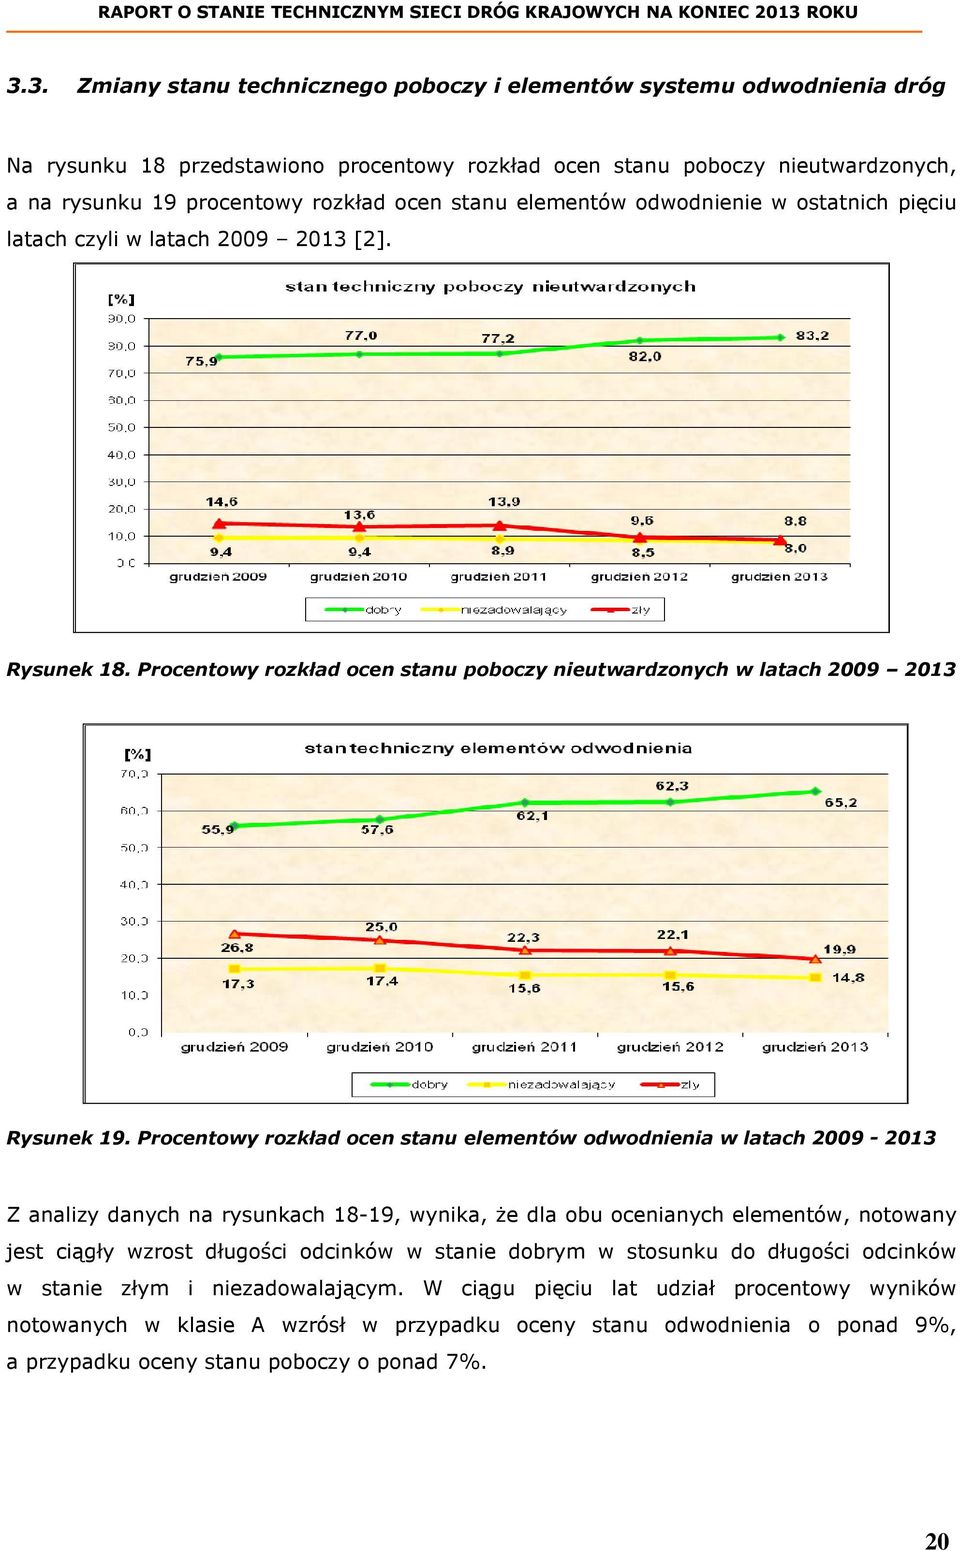 Procentowy rozkład ocen stanu elementów odwodnienia w latach 2009-2013 Z analizy danych na rysunkach 18-19, wynika, że dla obu ocenianych elementów, notowany jest ciągły wzrost długości odcinków w